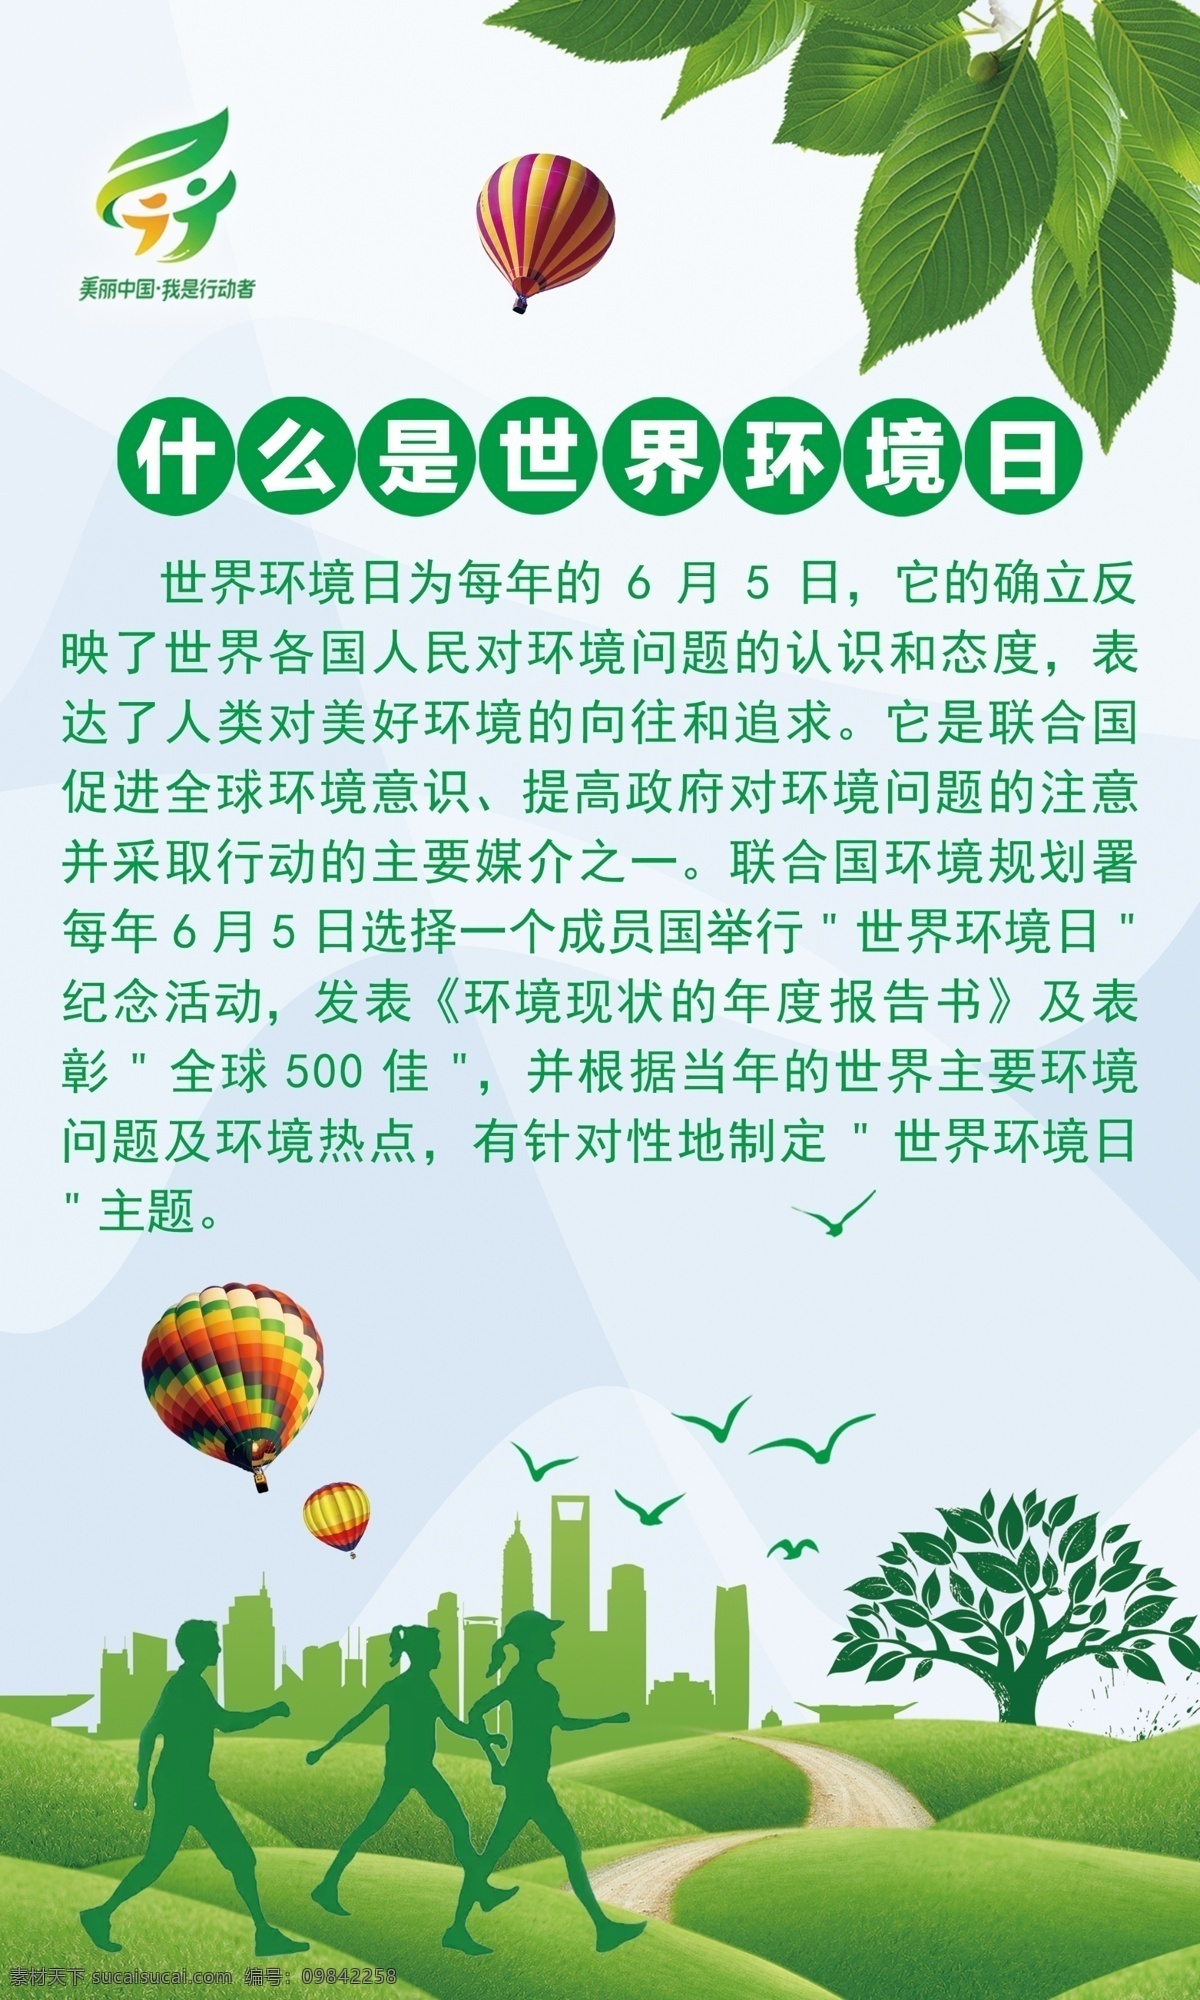 美丽 中国 行动者 美丽中国 我是行动者 什么是 世界环境日 树叶 气球 绿地 小鸟 分层